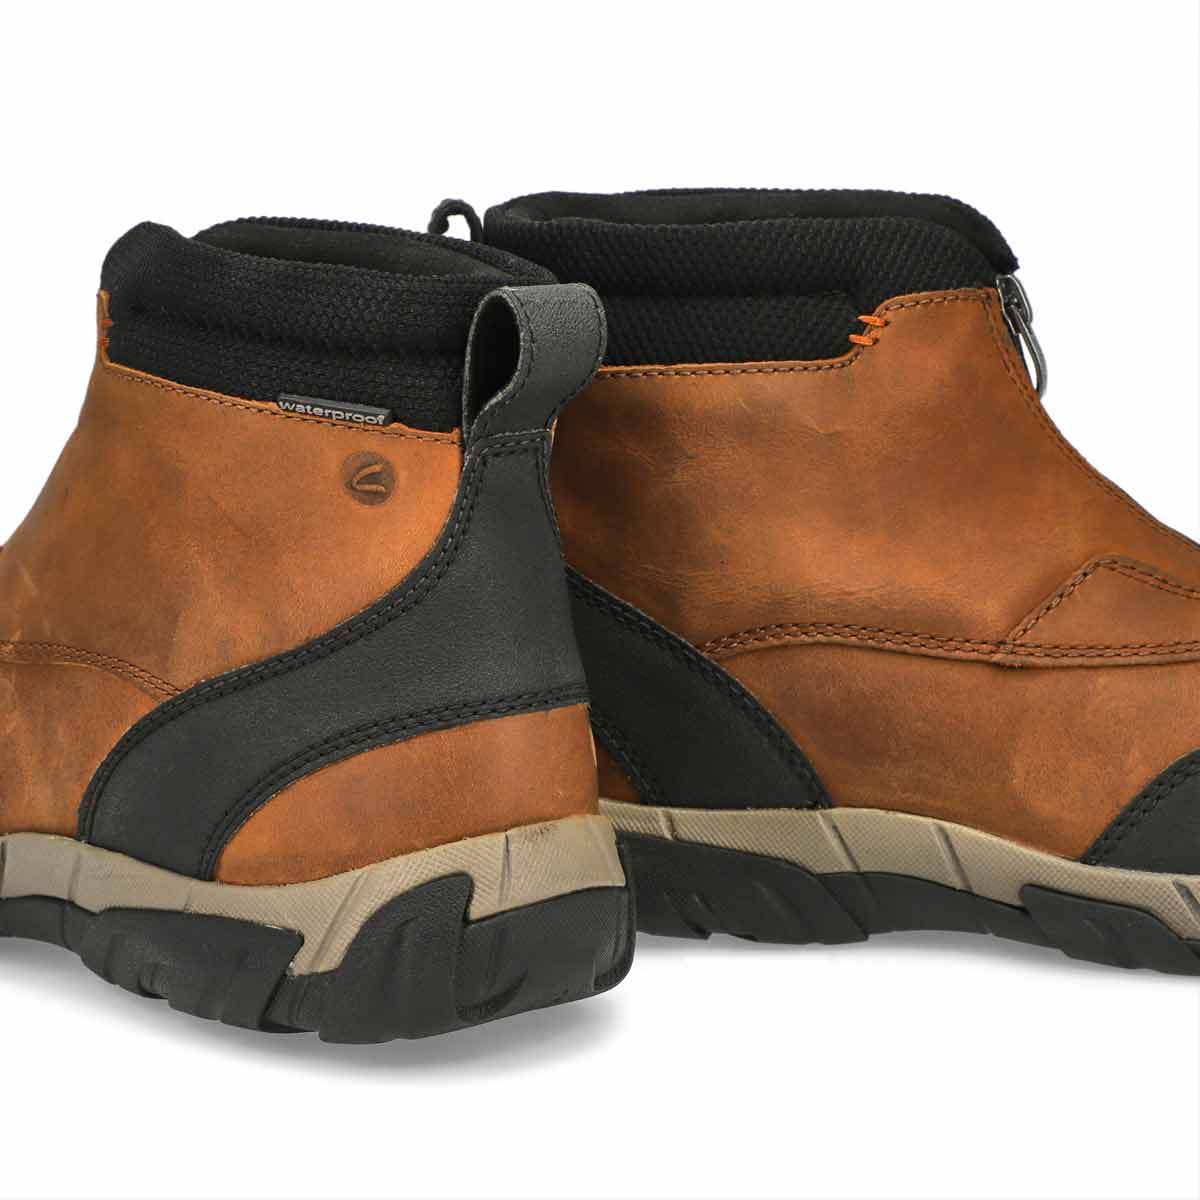 Men's Grove Zip II Waterproof Boot - Dark Tan